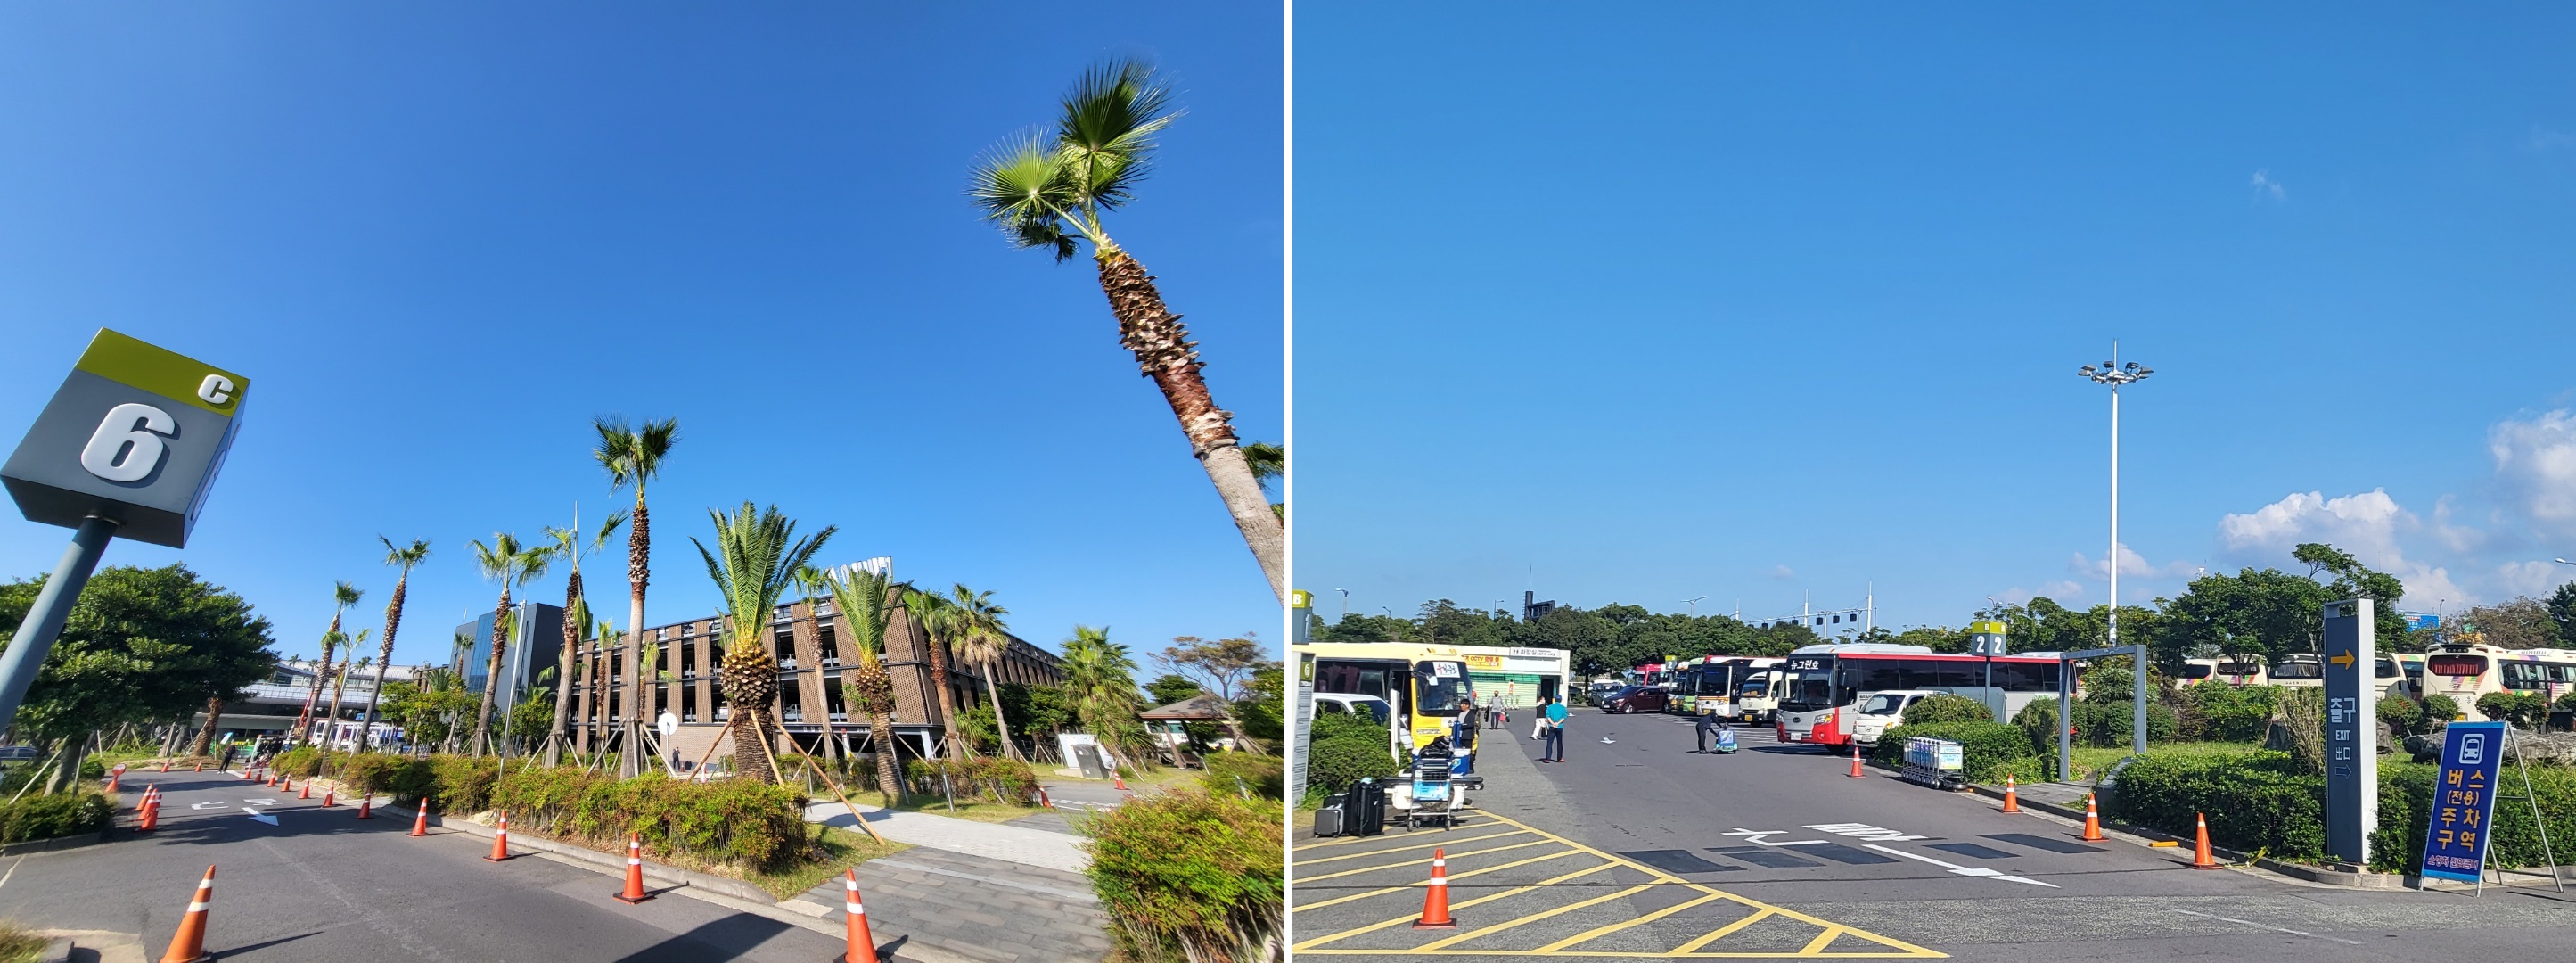 2017년 완공한 주차빌딩도 이젠 포화상태에 이르렀다. 오른쪽 사진은 전세버스 주차장의 모습.